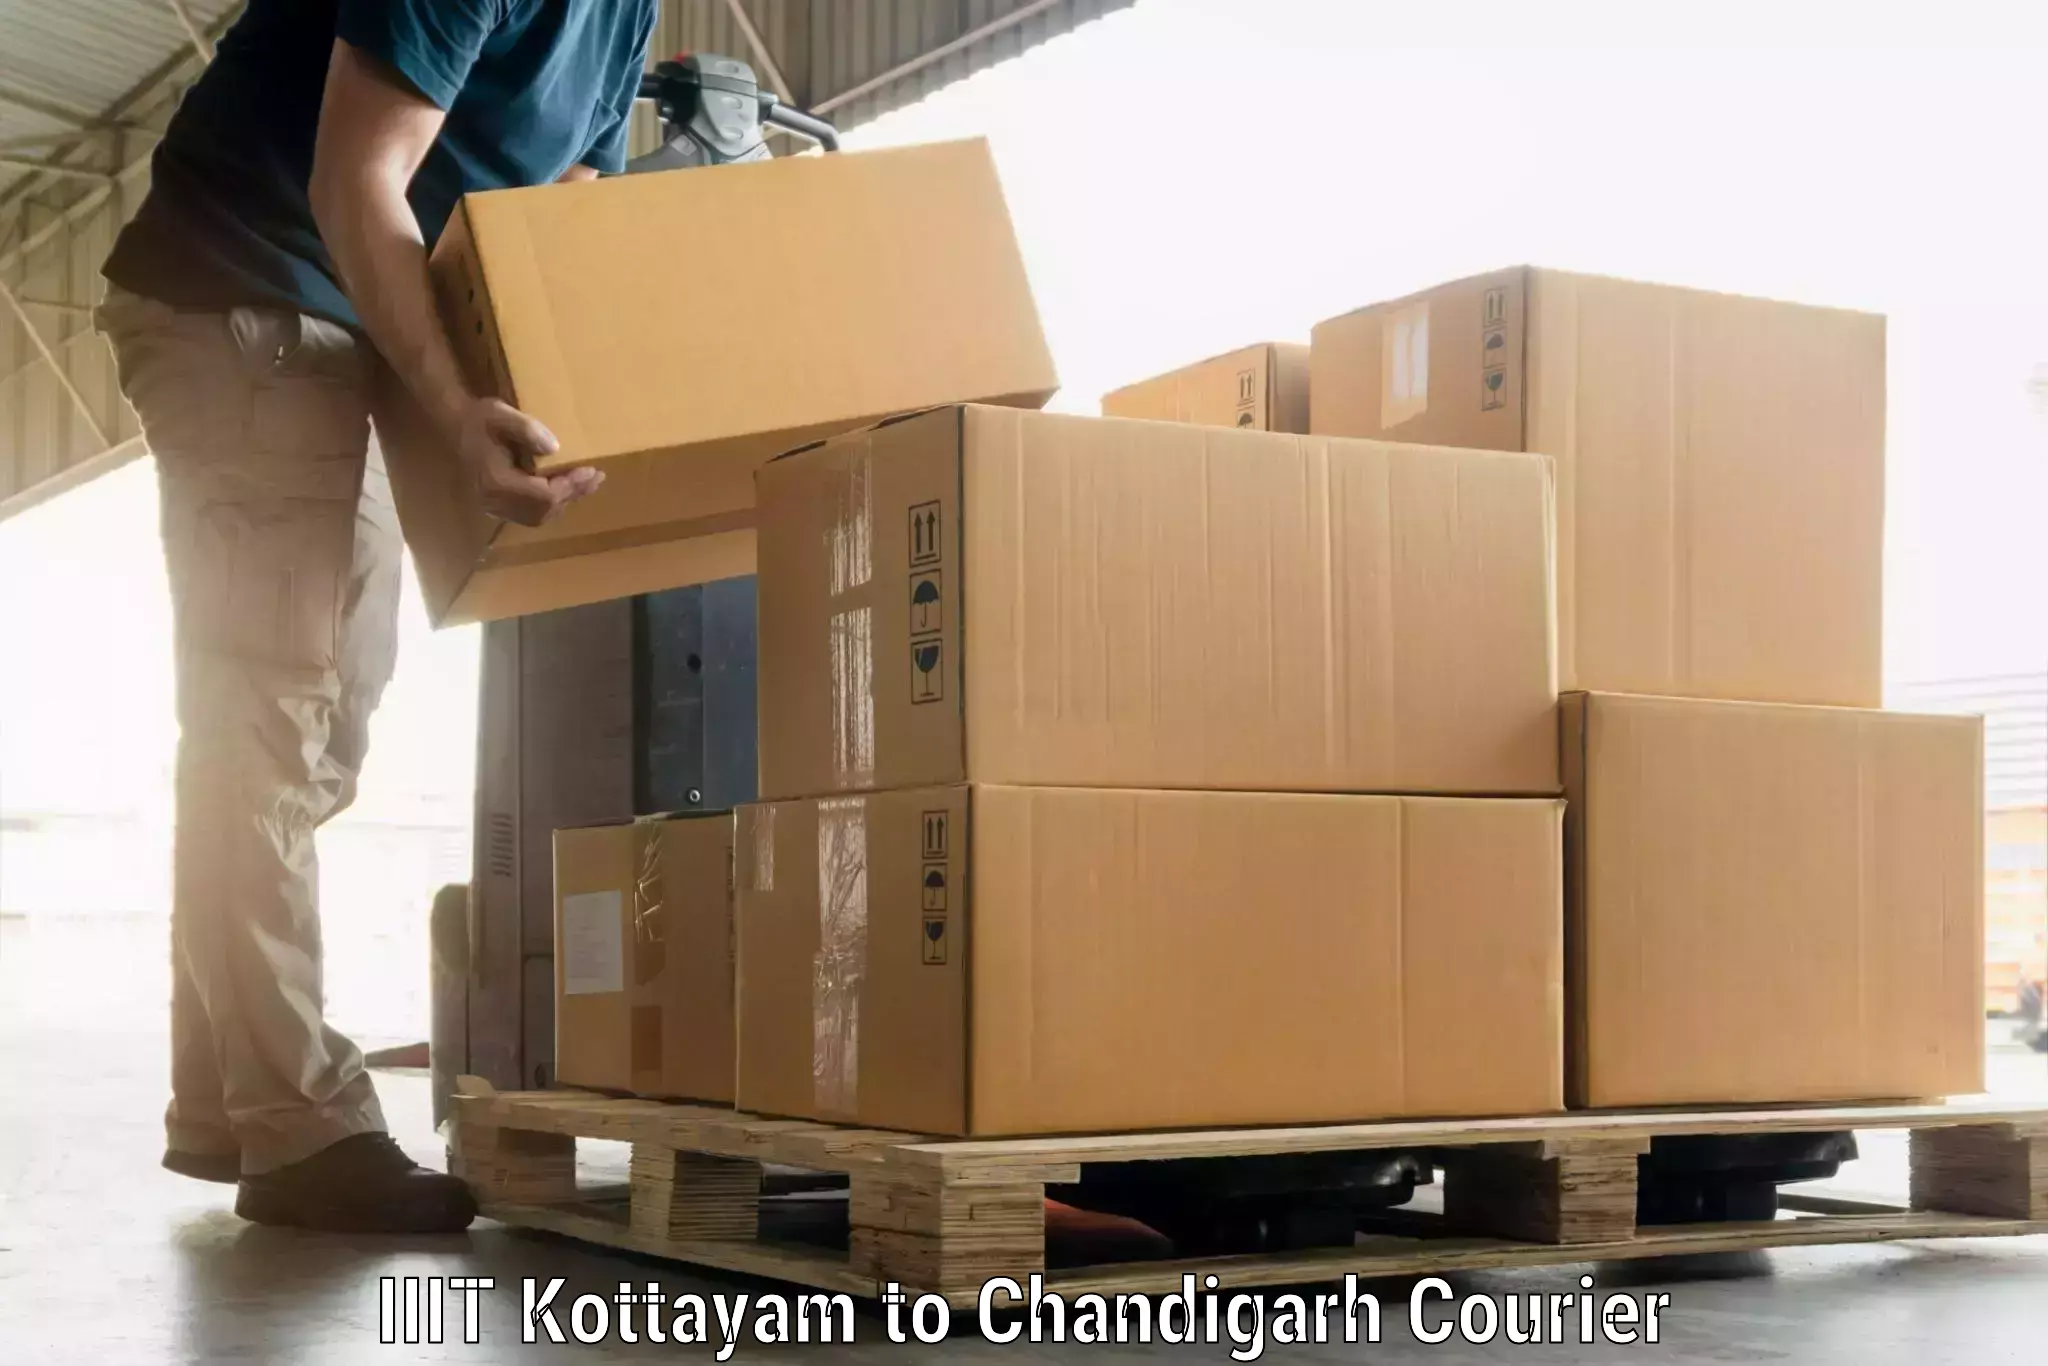 Luggage shipping estimate IIIT Kottayam to Chandigarh